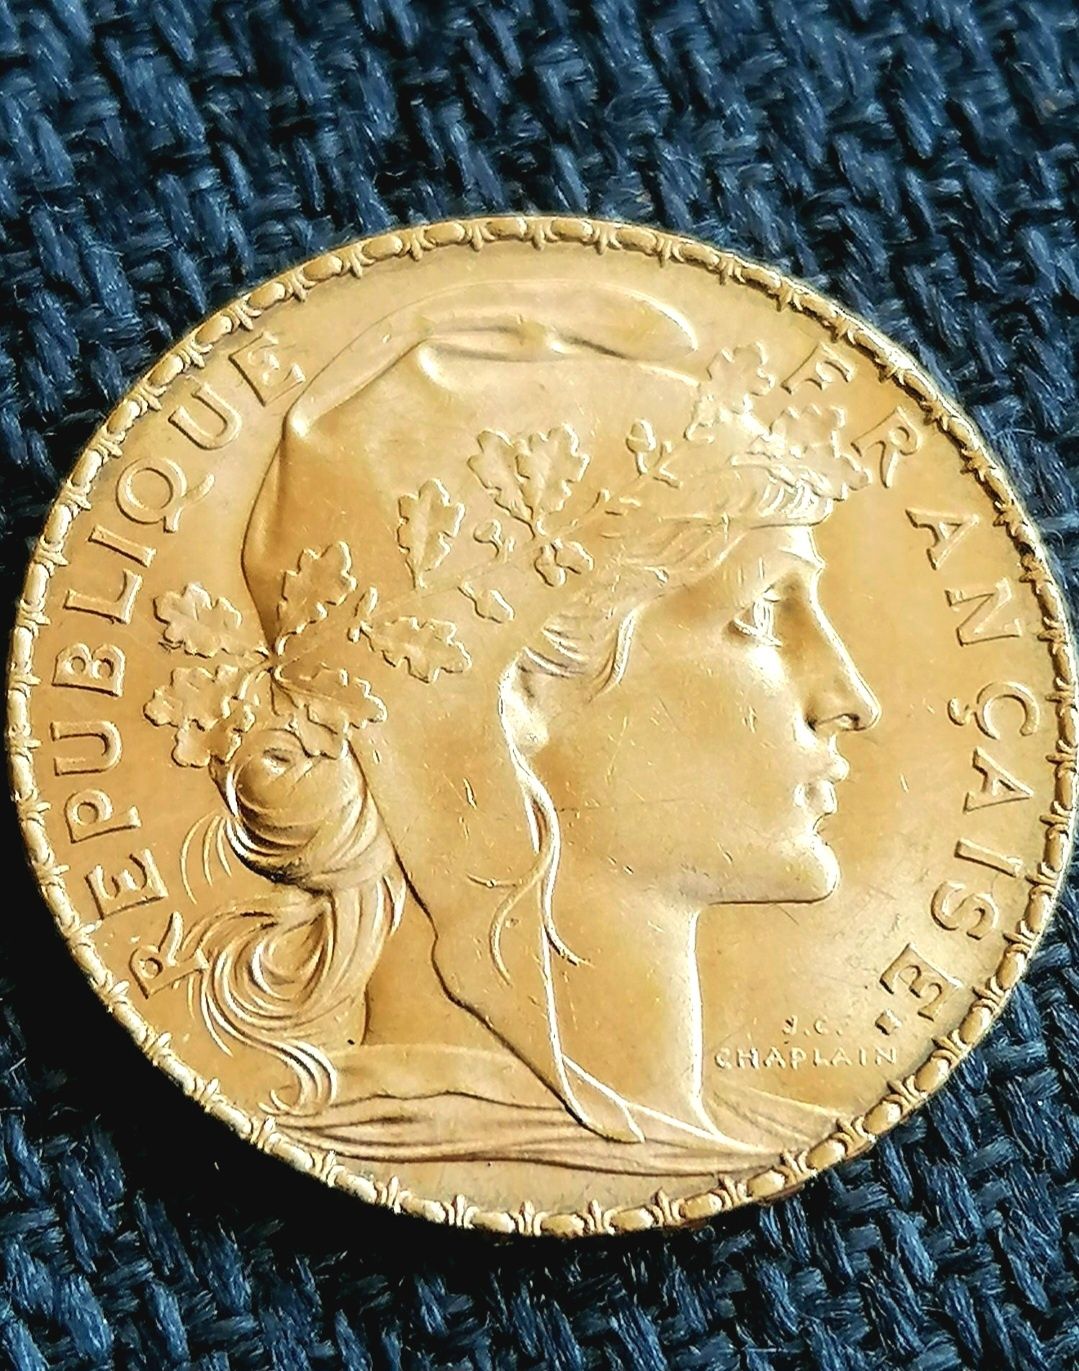 Vând monedă istorică de aur Franța 20 franci (Marianne)